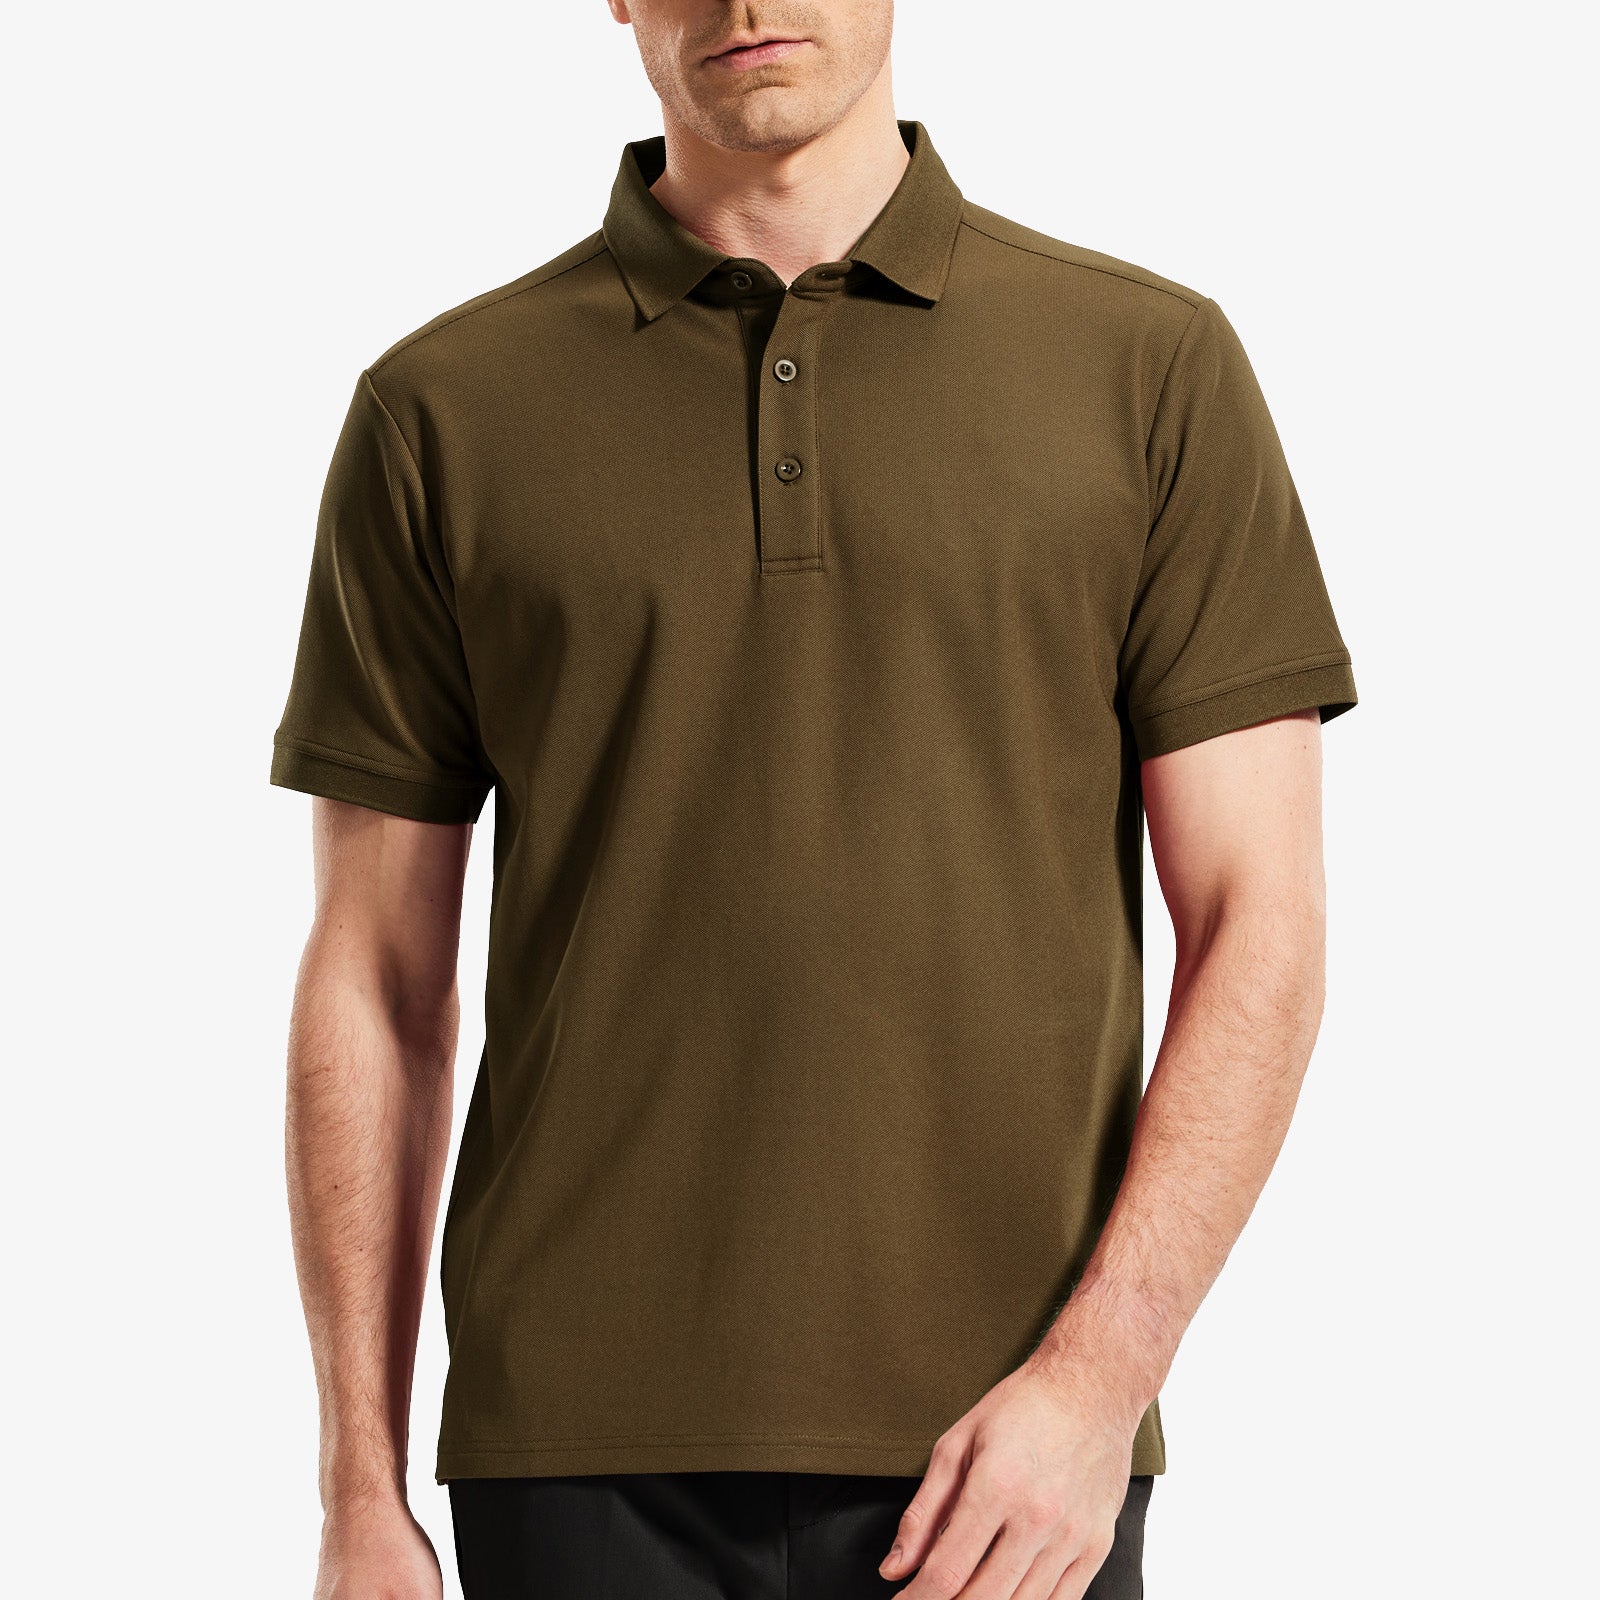 Herren Golf Poloshirts Normal geschnittene, modische und lässige T-Shirts mit Kragen